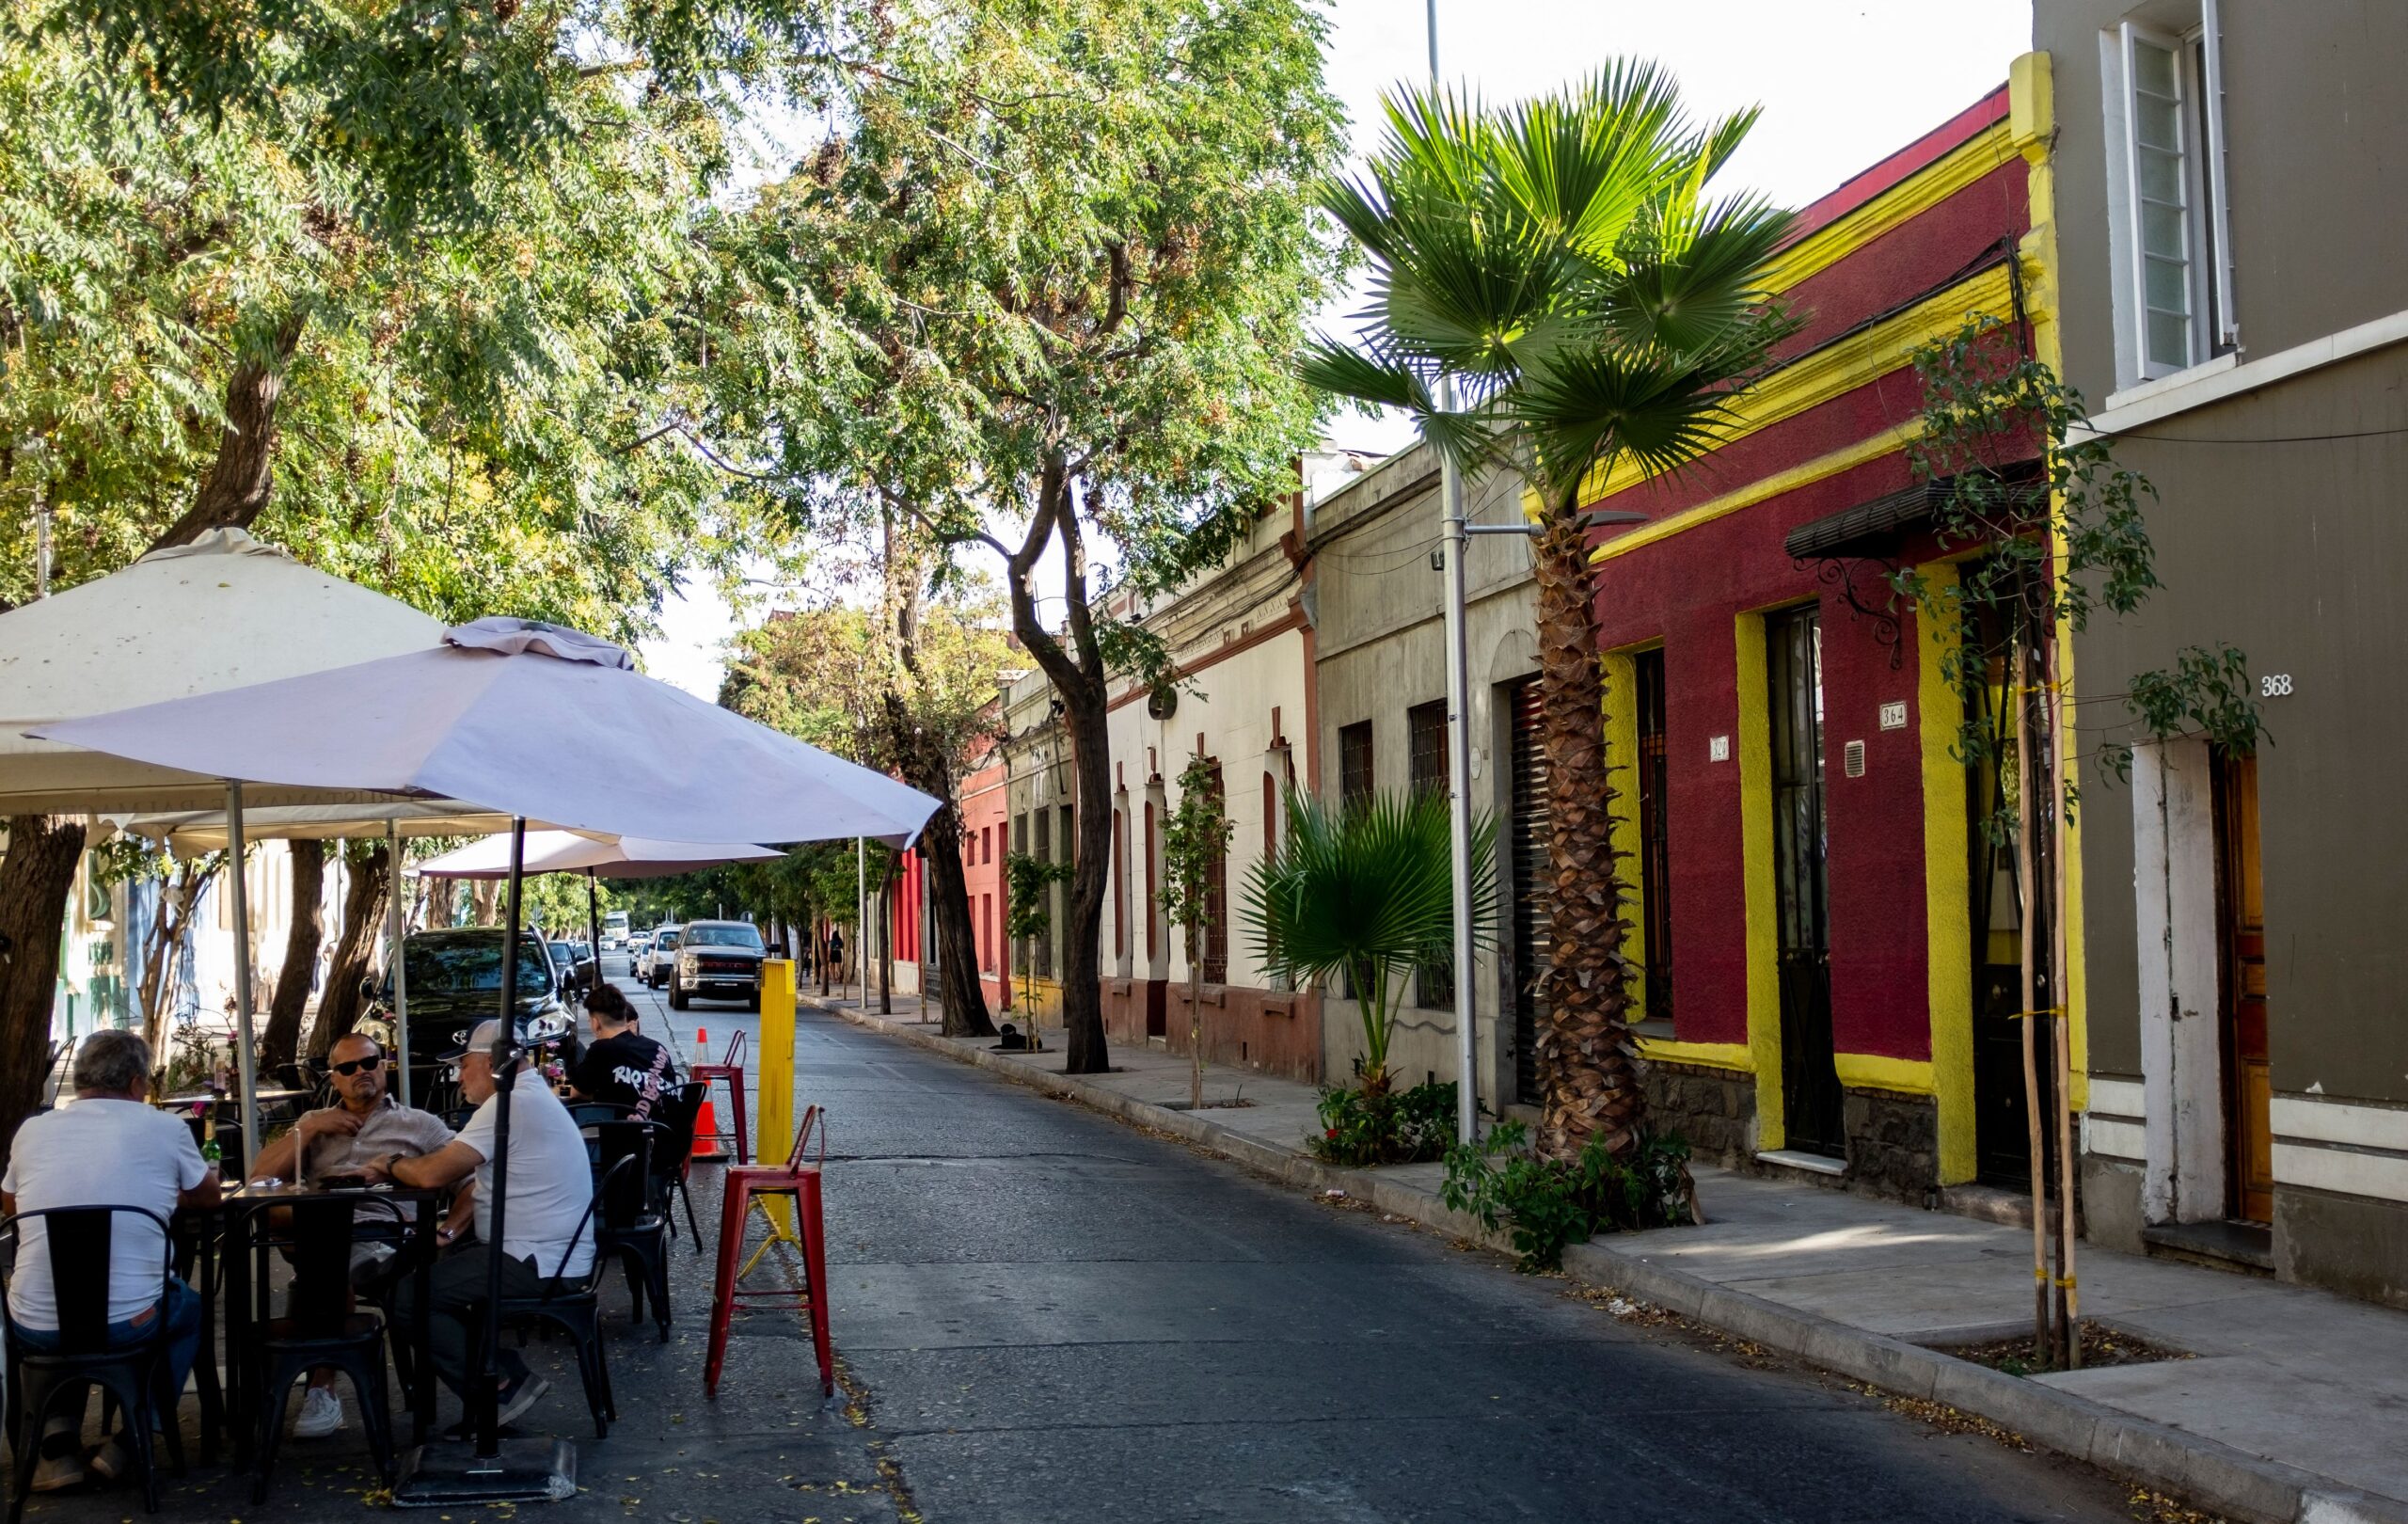 El mejor barrio del mundo está en México, según Time Out